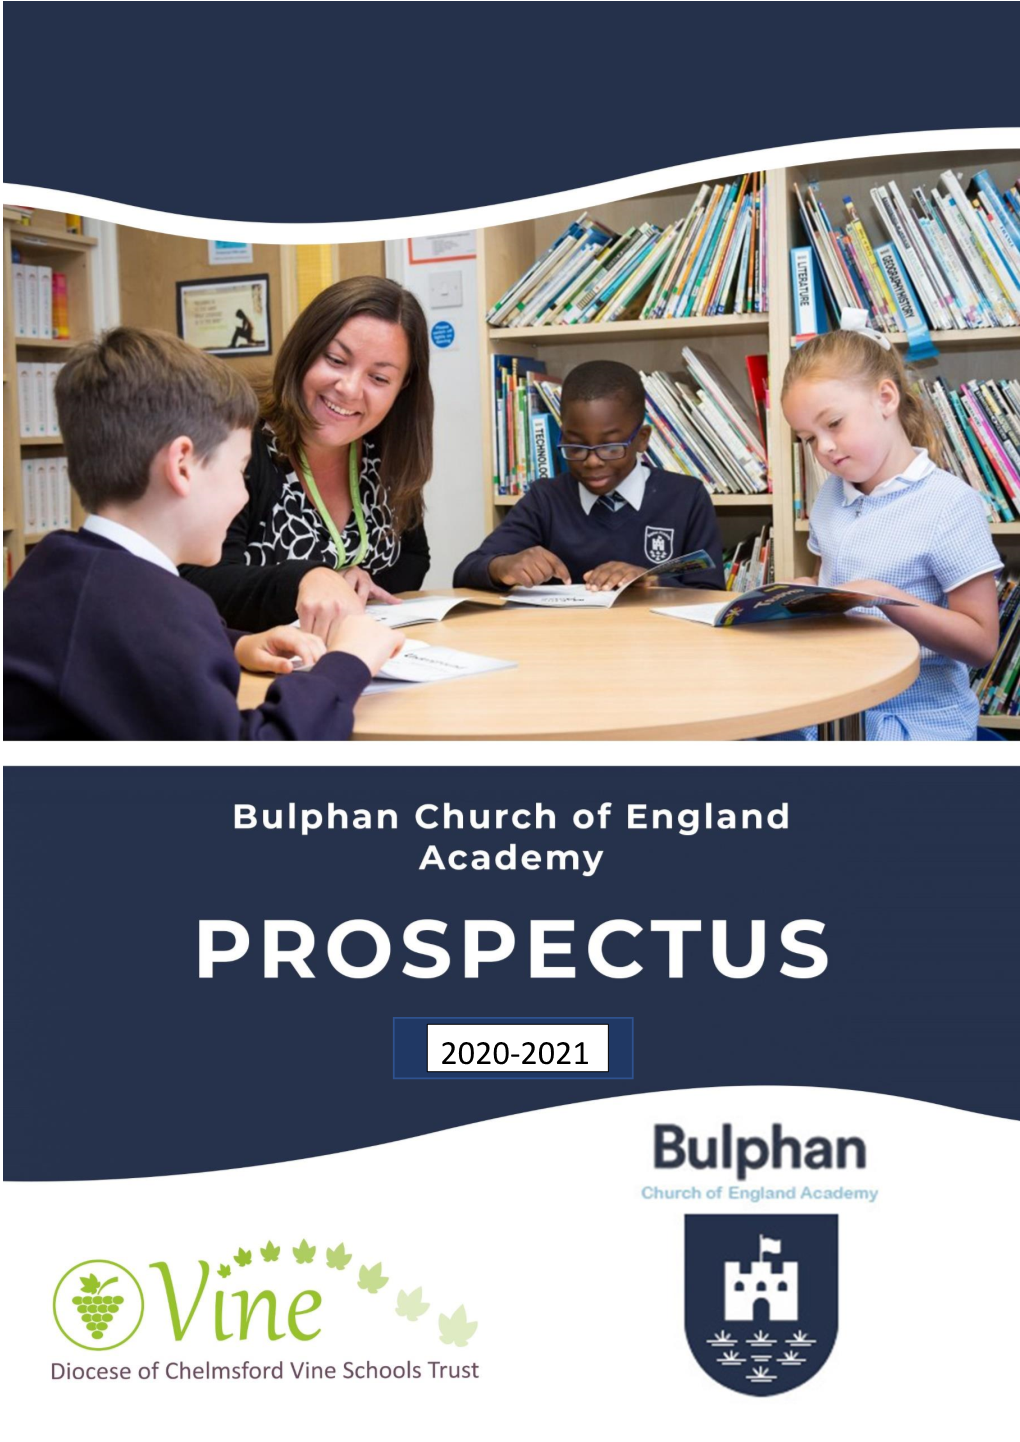 Bulphan Church of England Academy